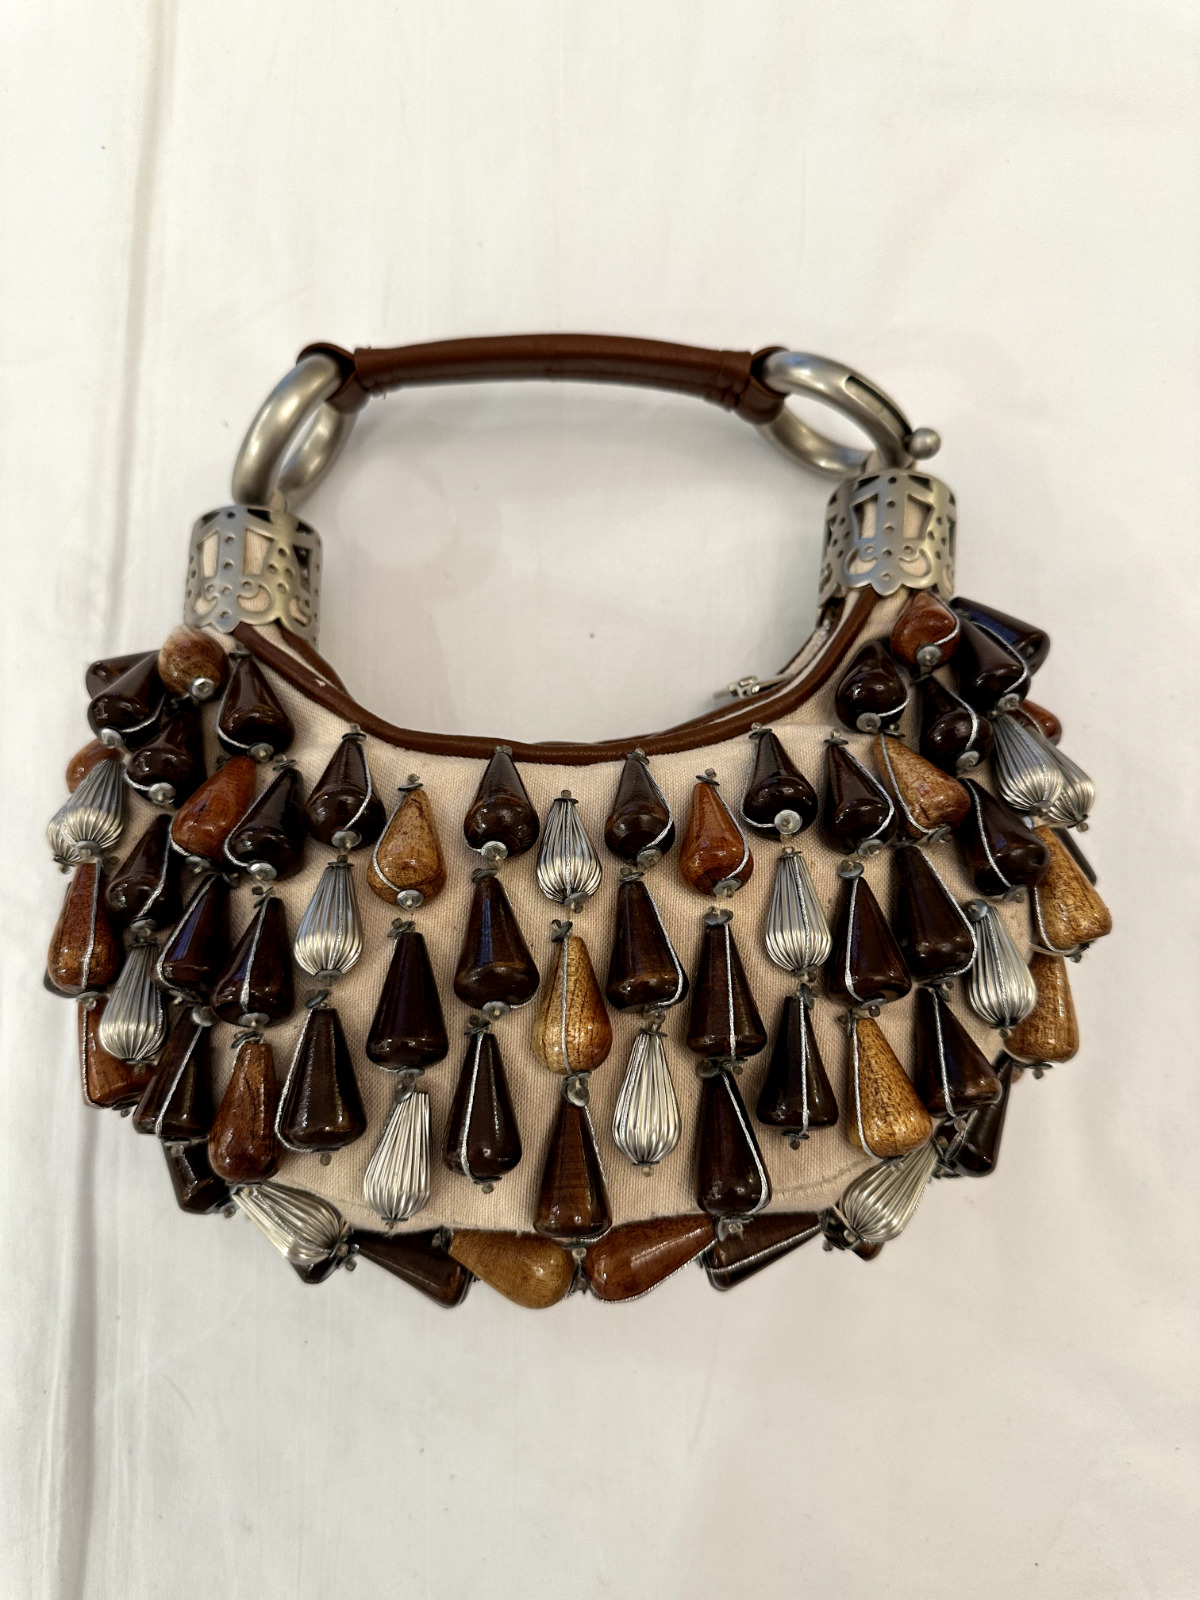 Chloe By Phoebe Philo Early 2000s Vintage Bracelet Handbag Wood And Metal Beads